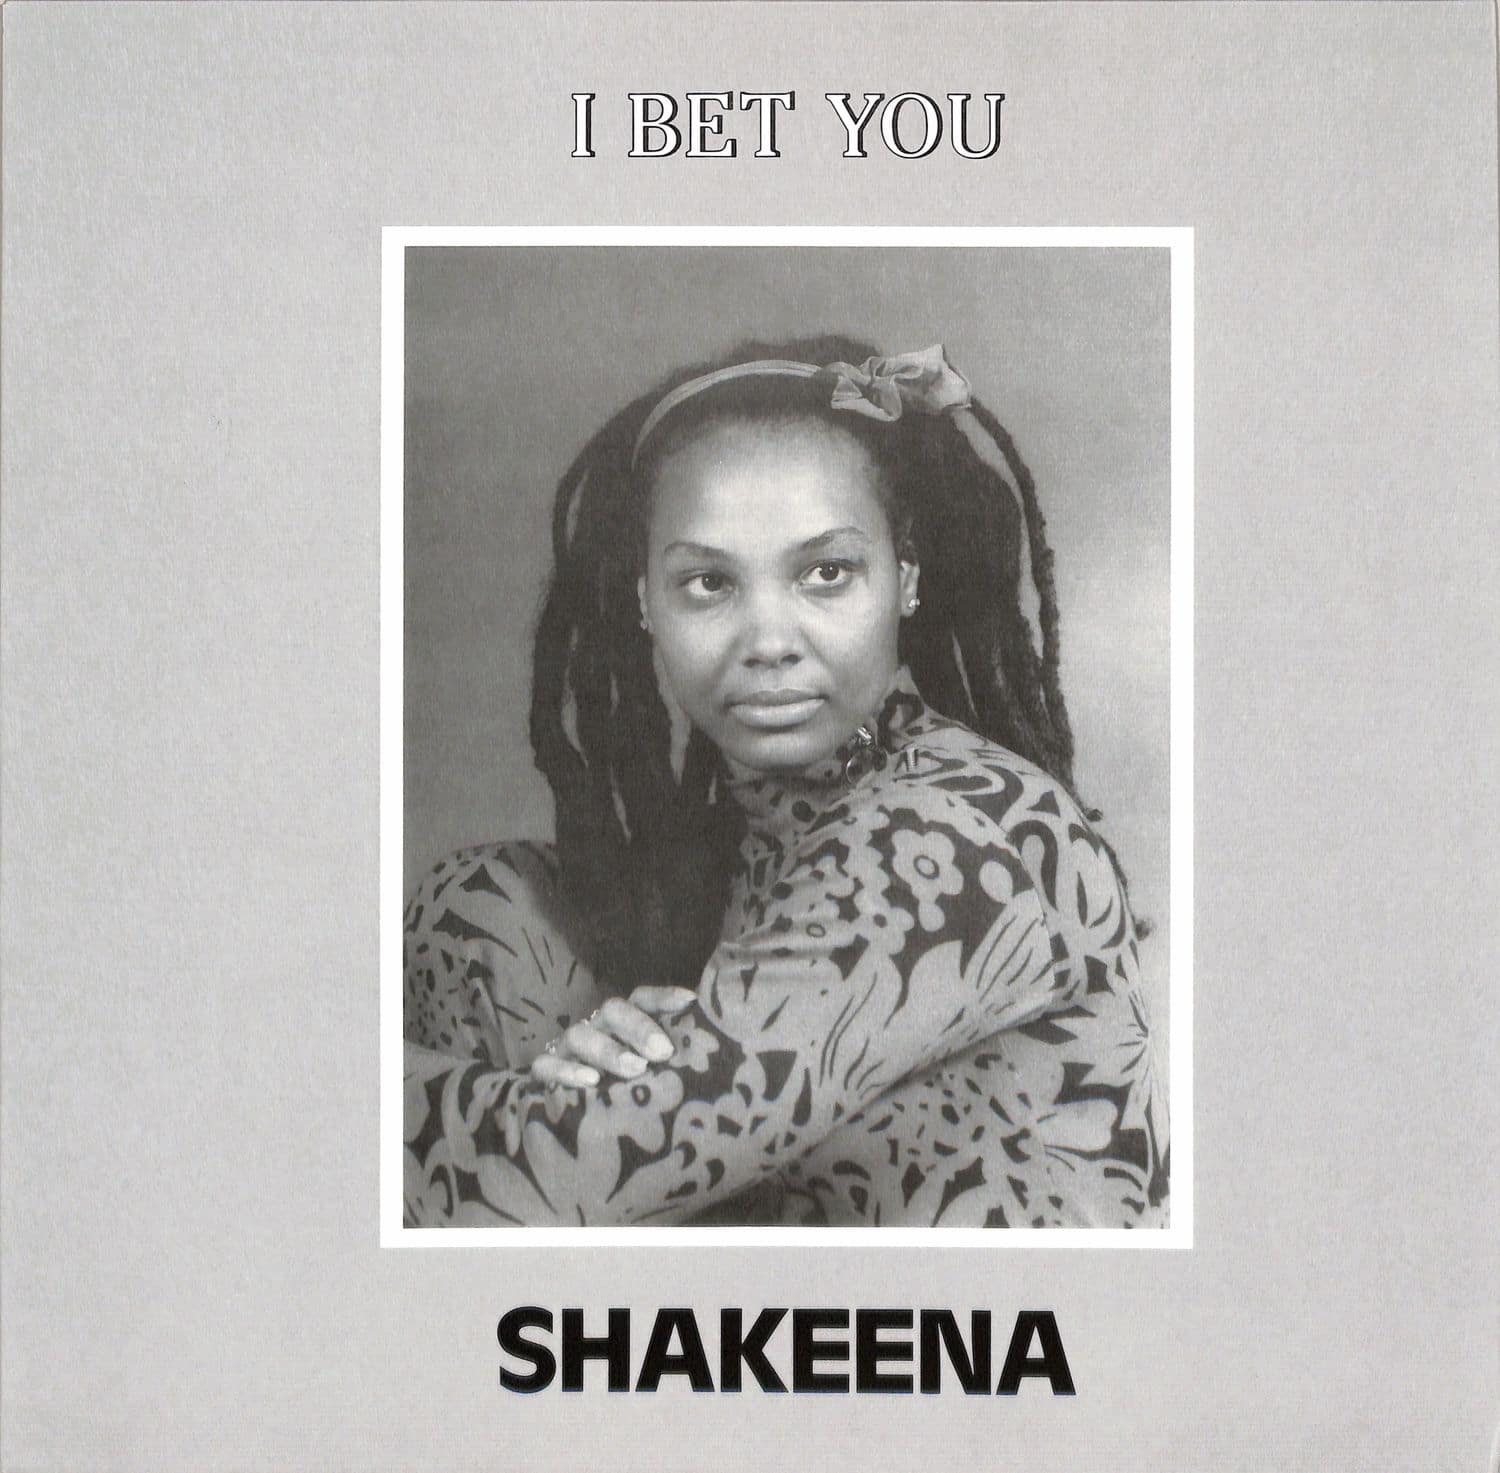 Shakeena - I BET YOU